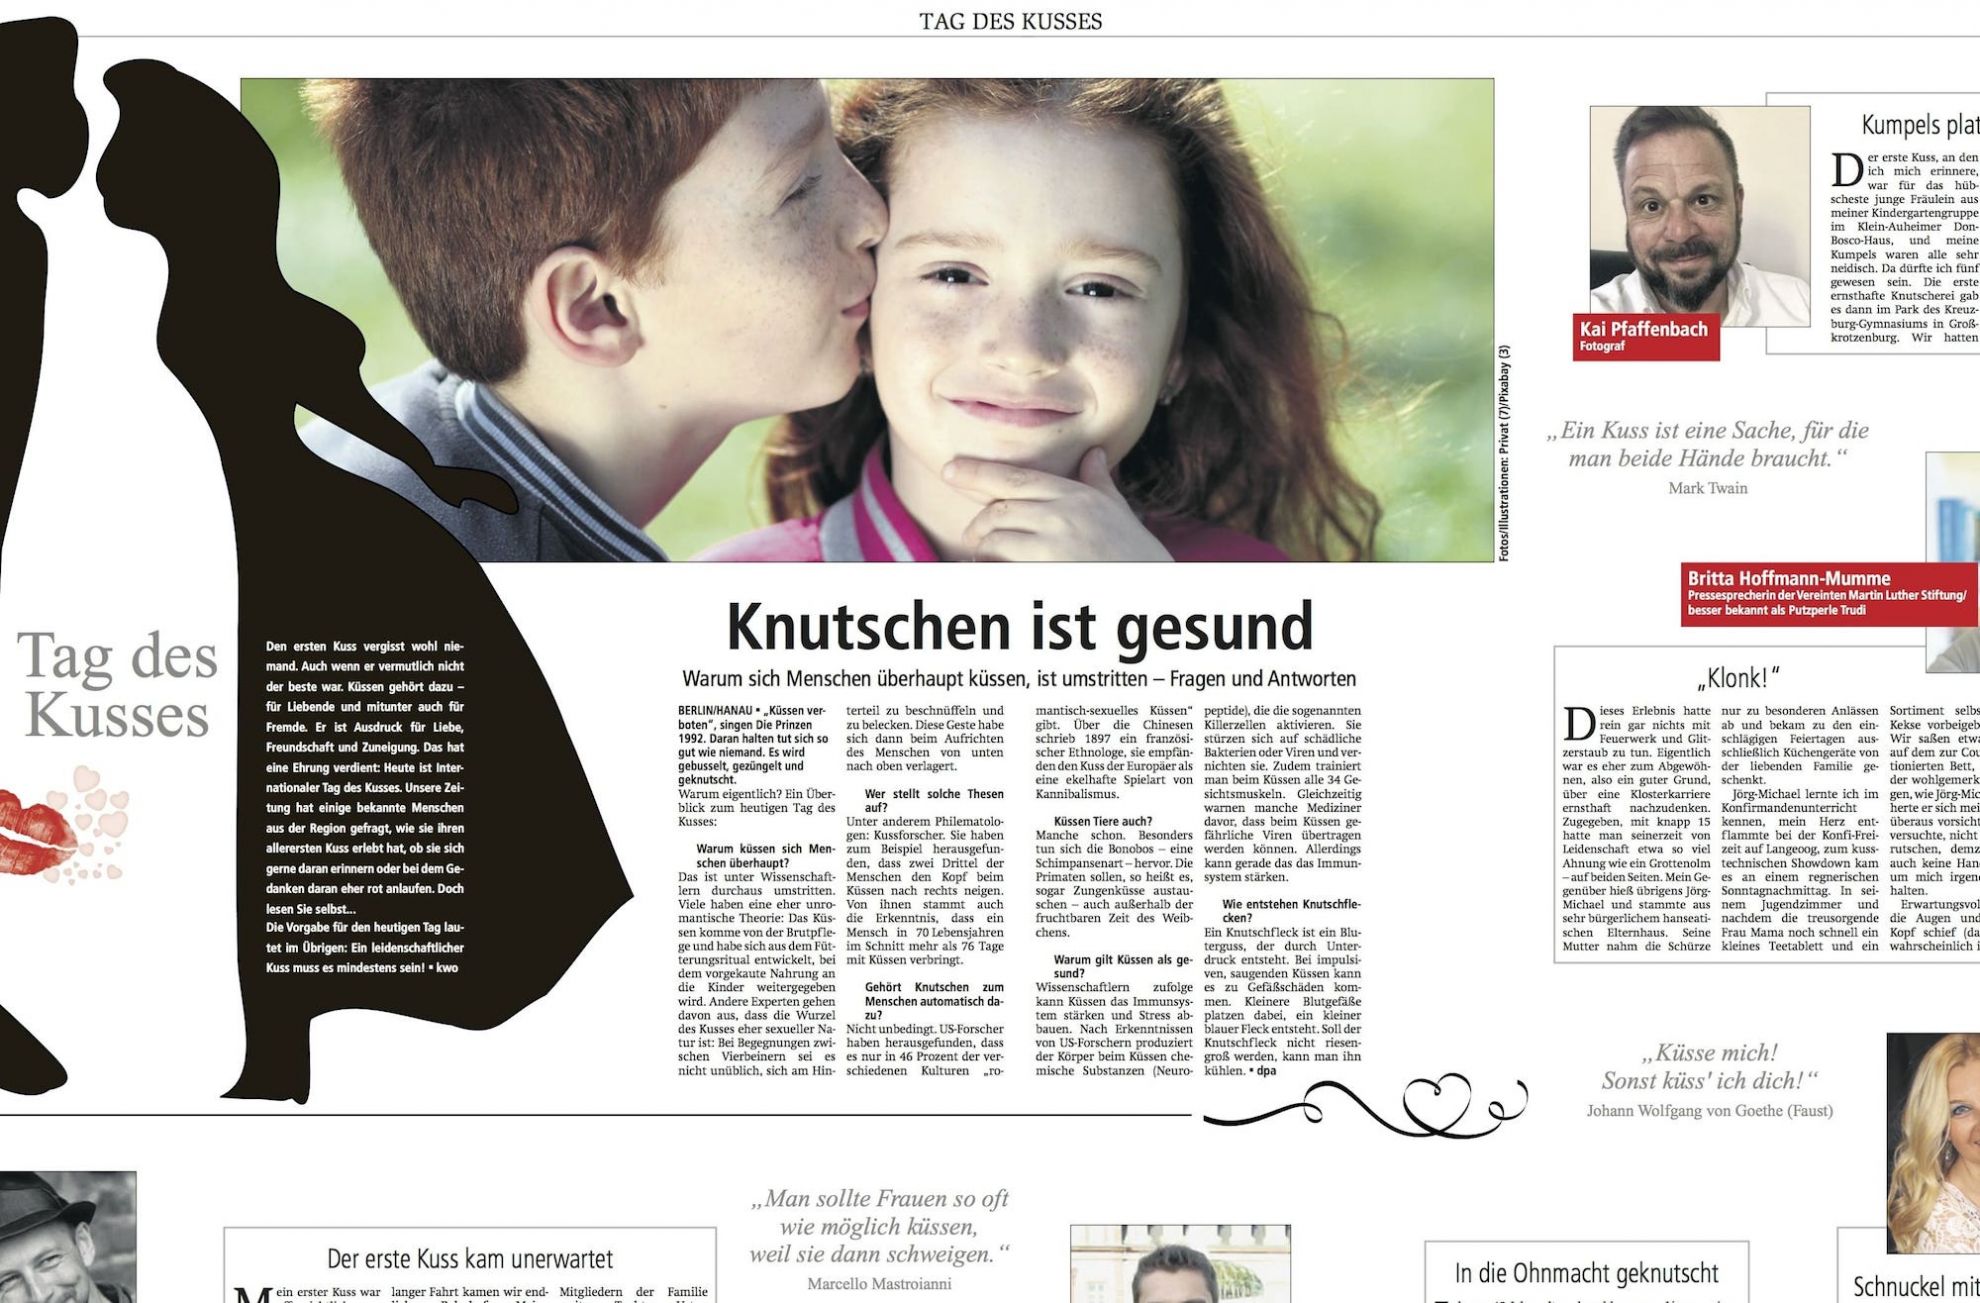 Die Kreiszeitung Wesermarsch hat den Tag des deutschen Apfels aufgegriffen.